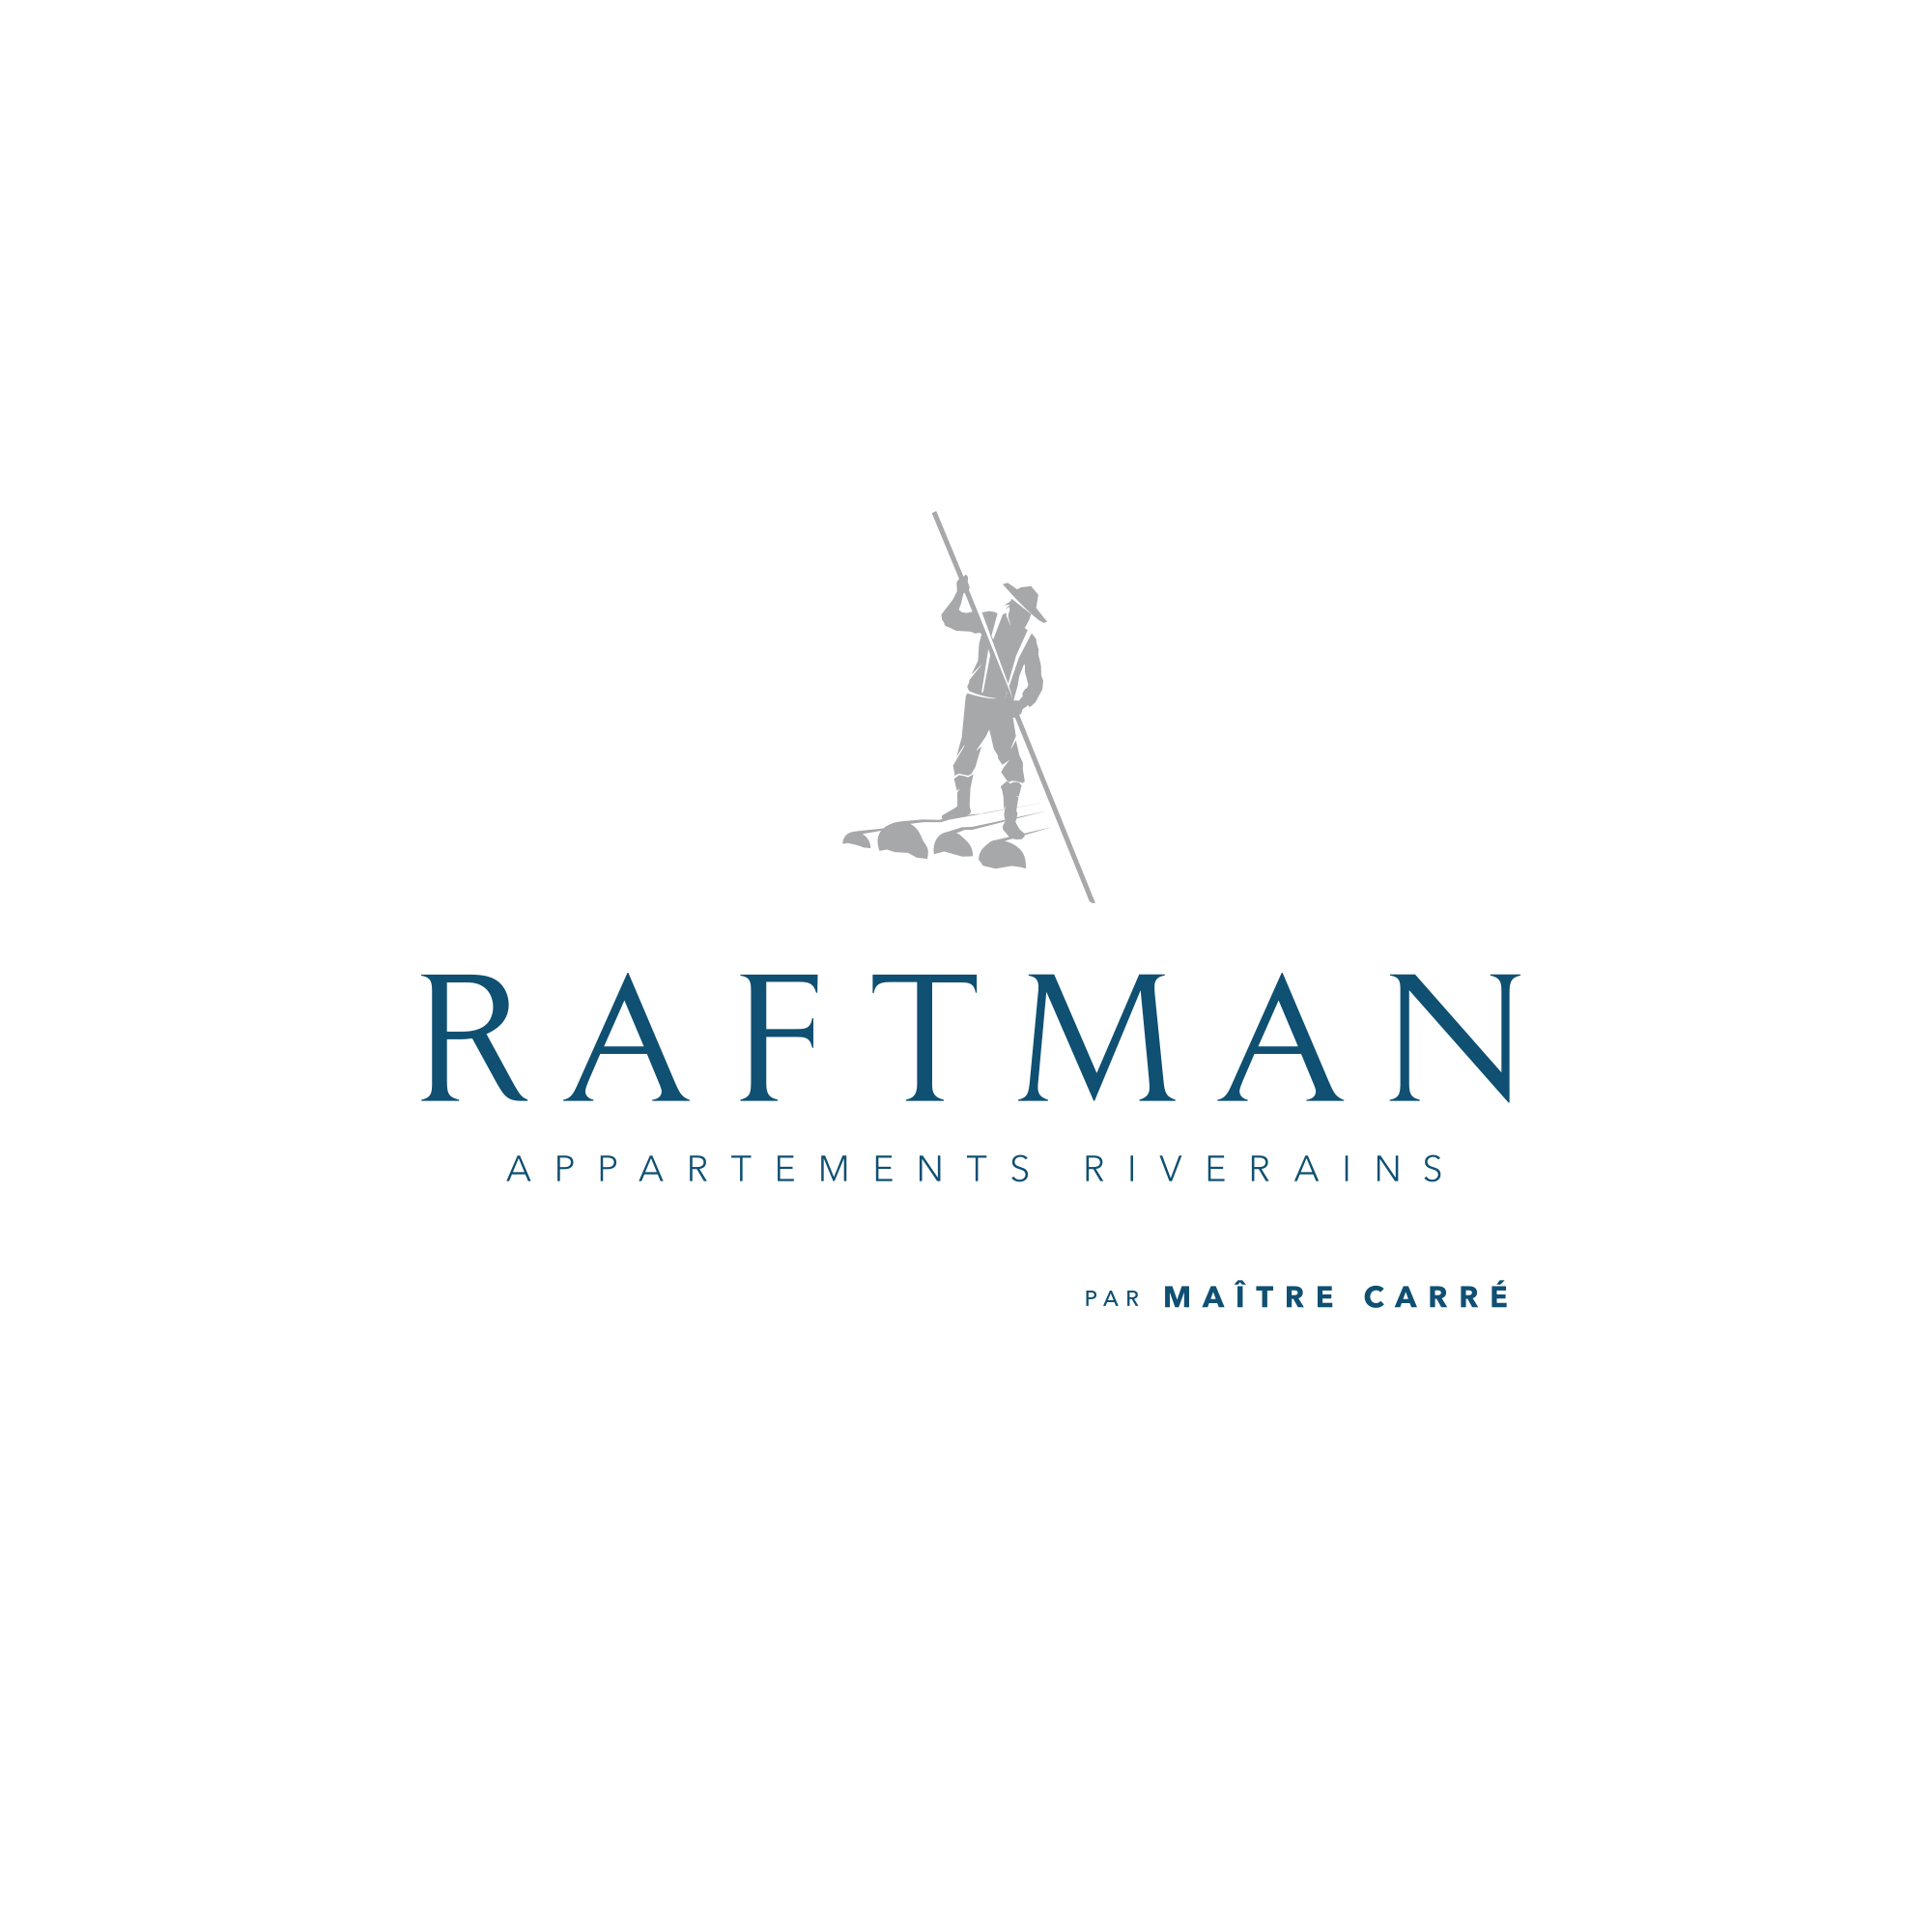 Le Raftman